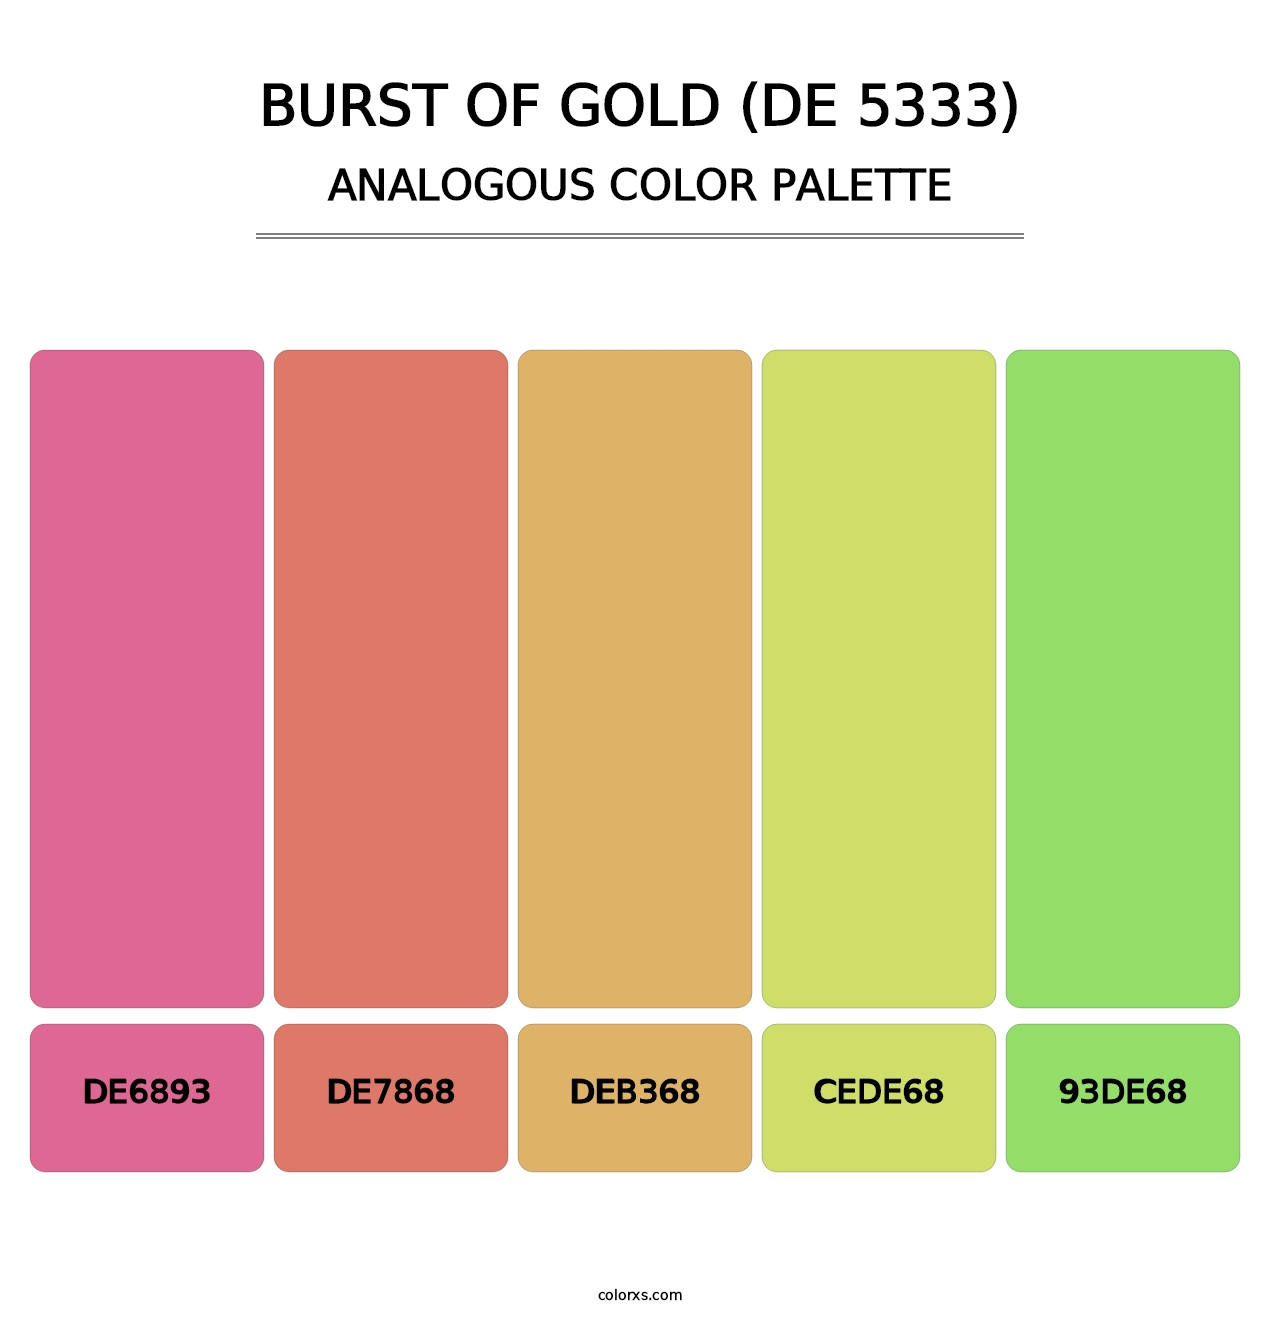 Burst of Gold (DE 5333) - Analogous Color Palette